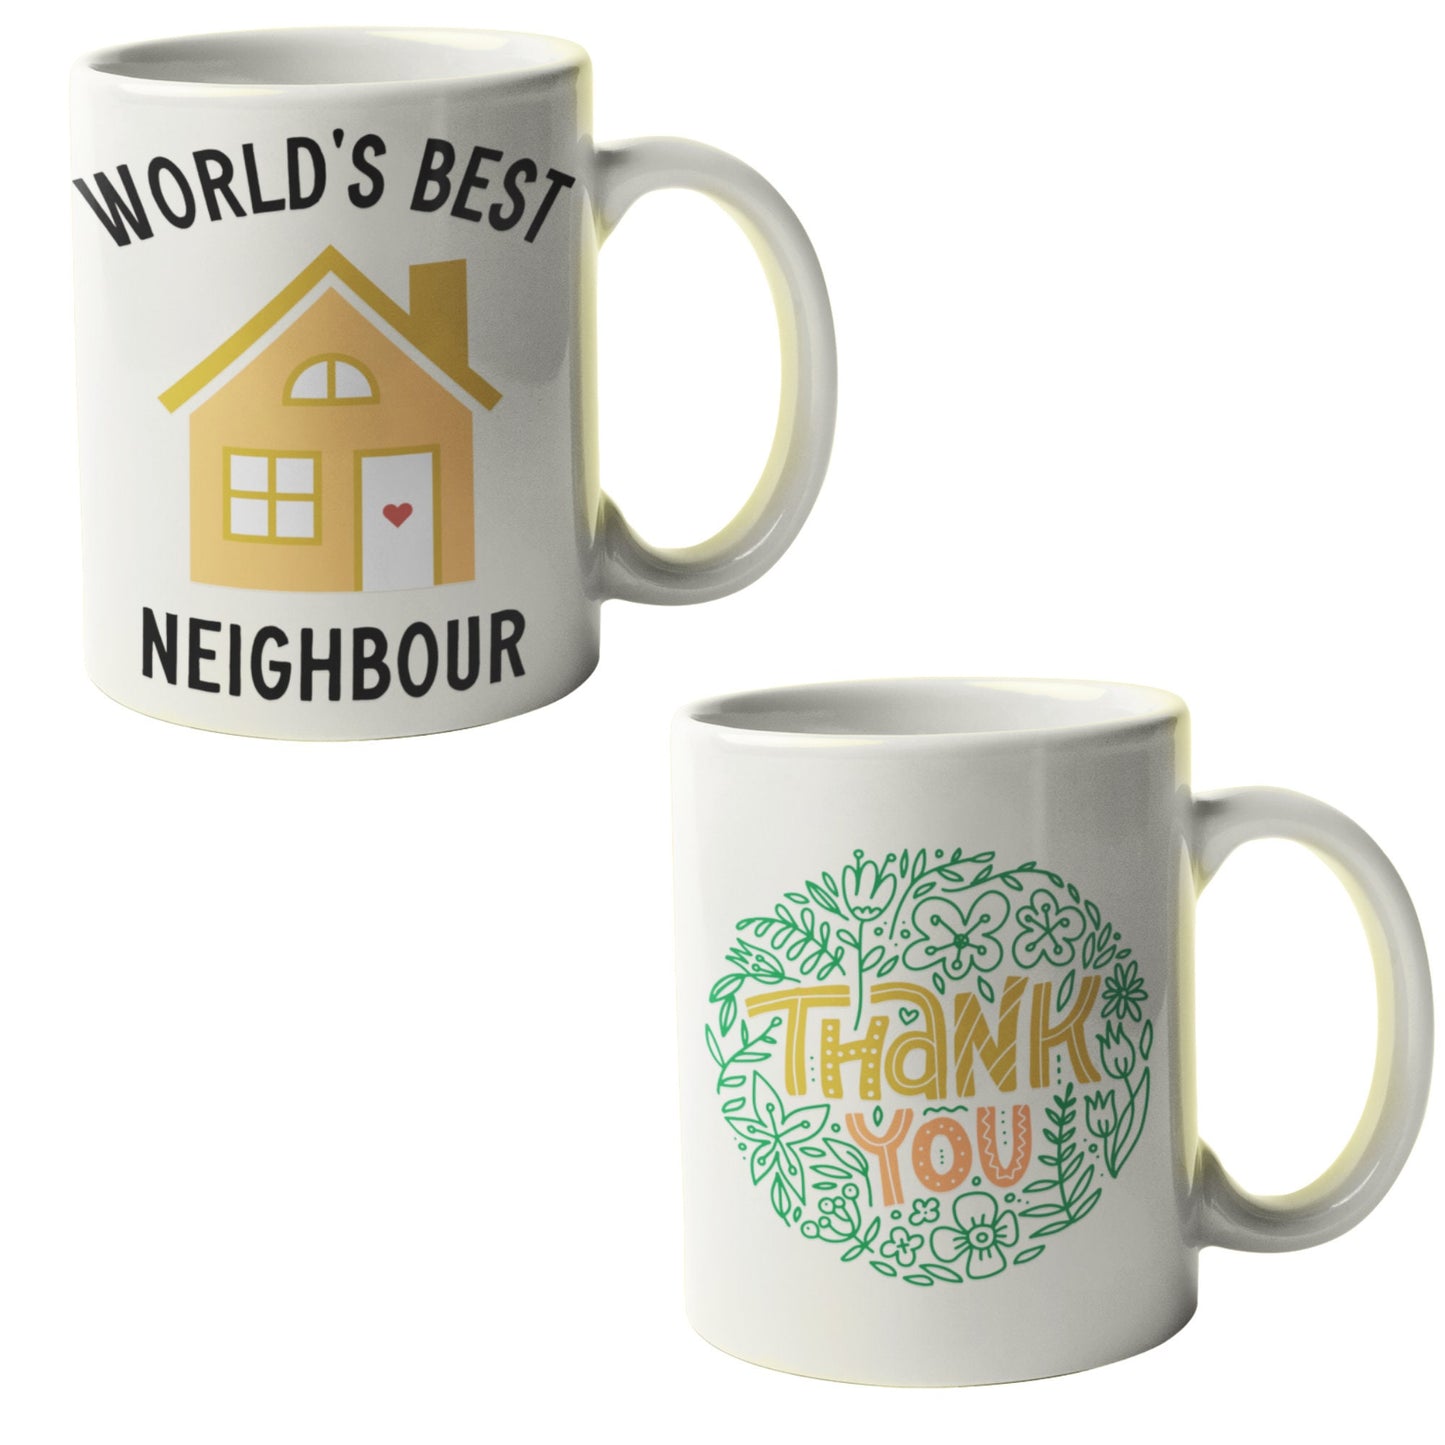 Worlds best neighbour thank you mug